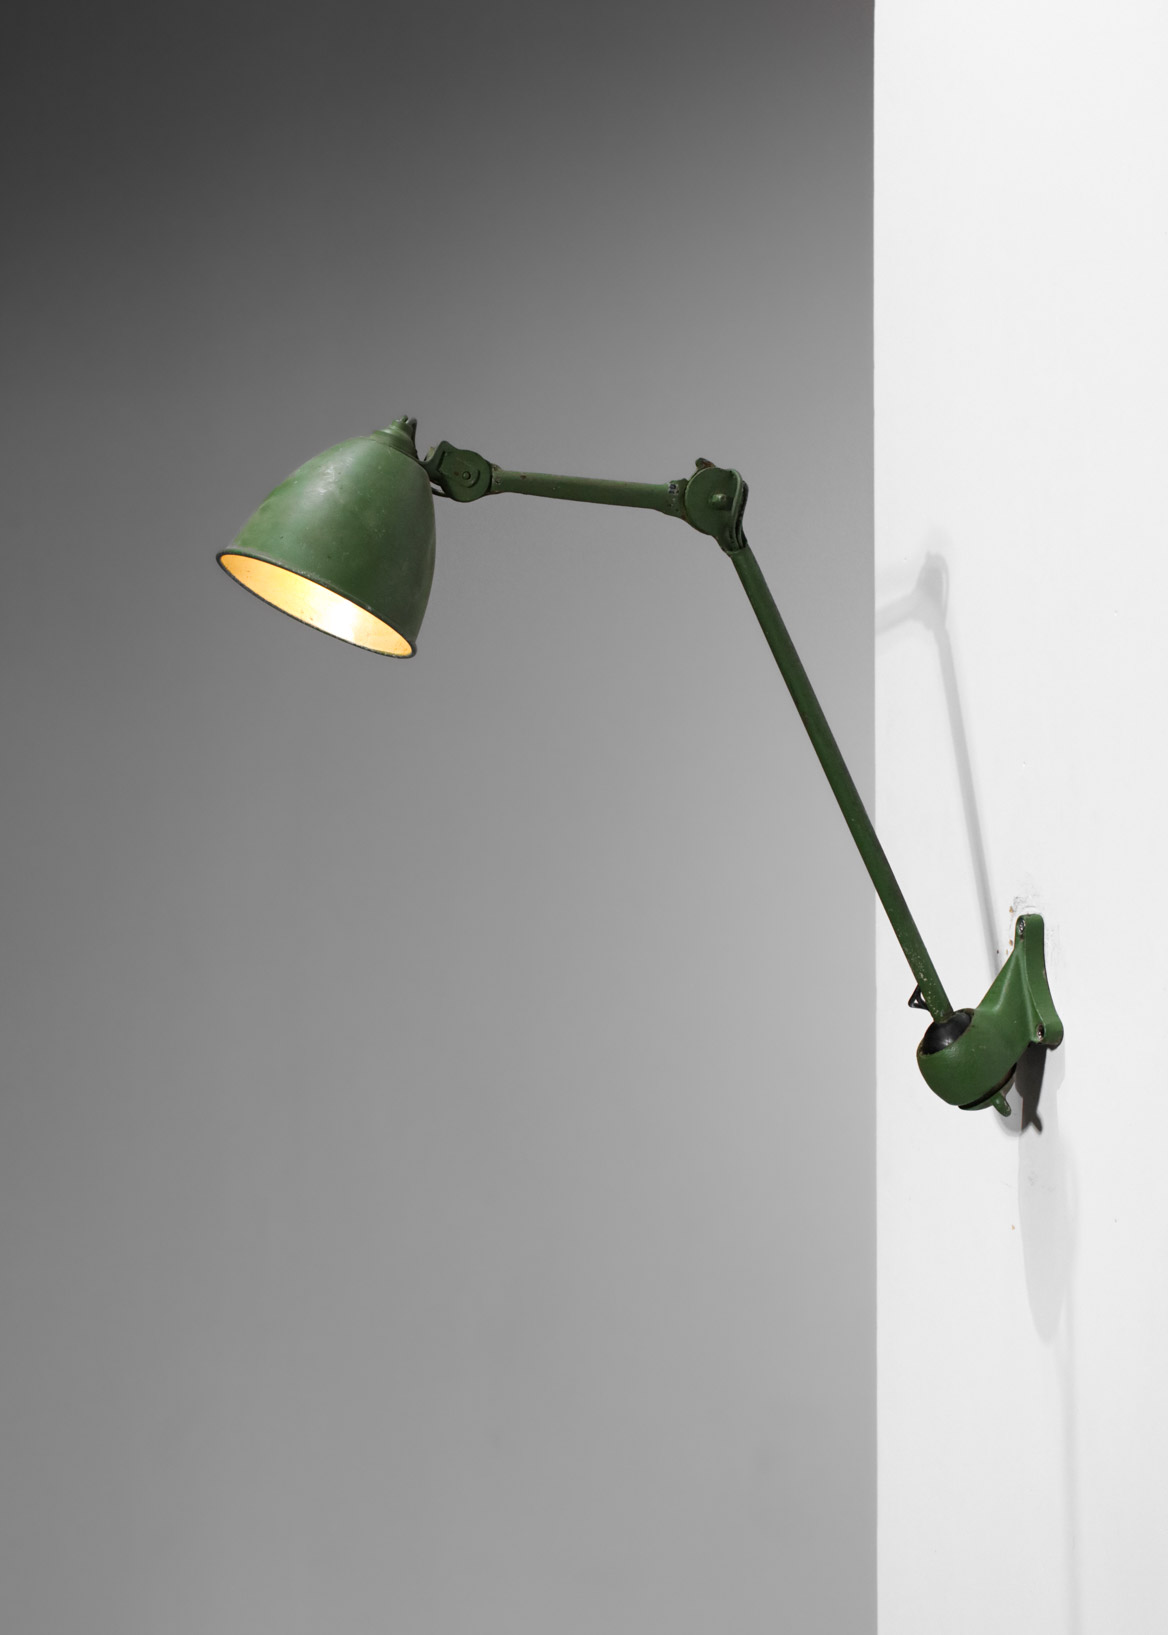 Albert Albin Gras workshop lamp - G345 - Danke Galerie